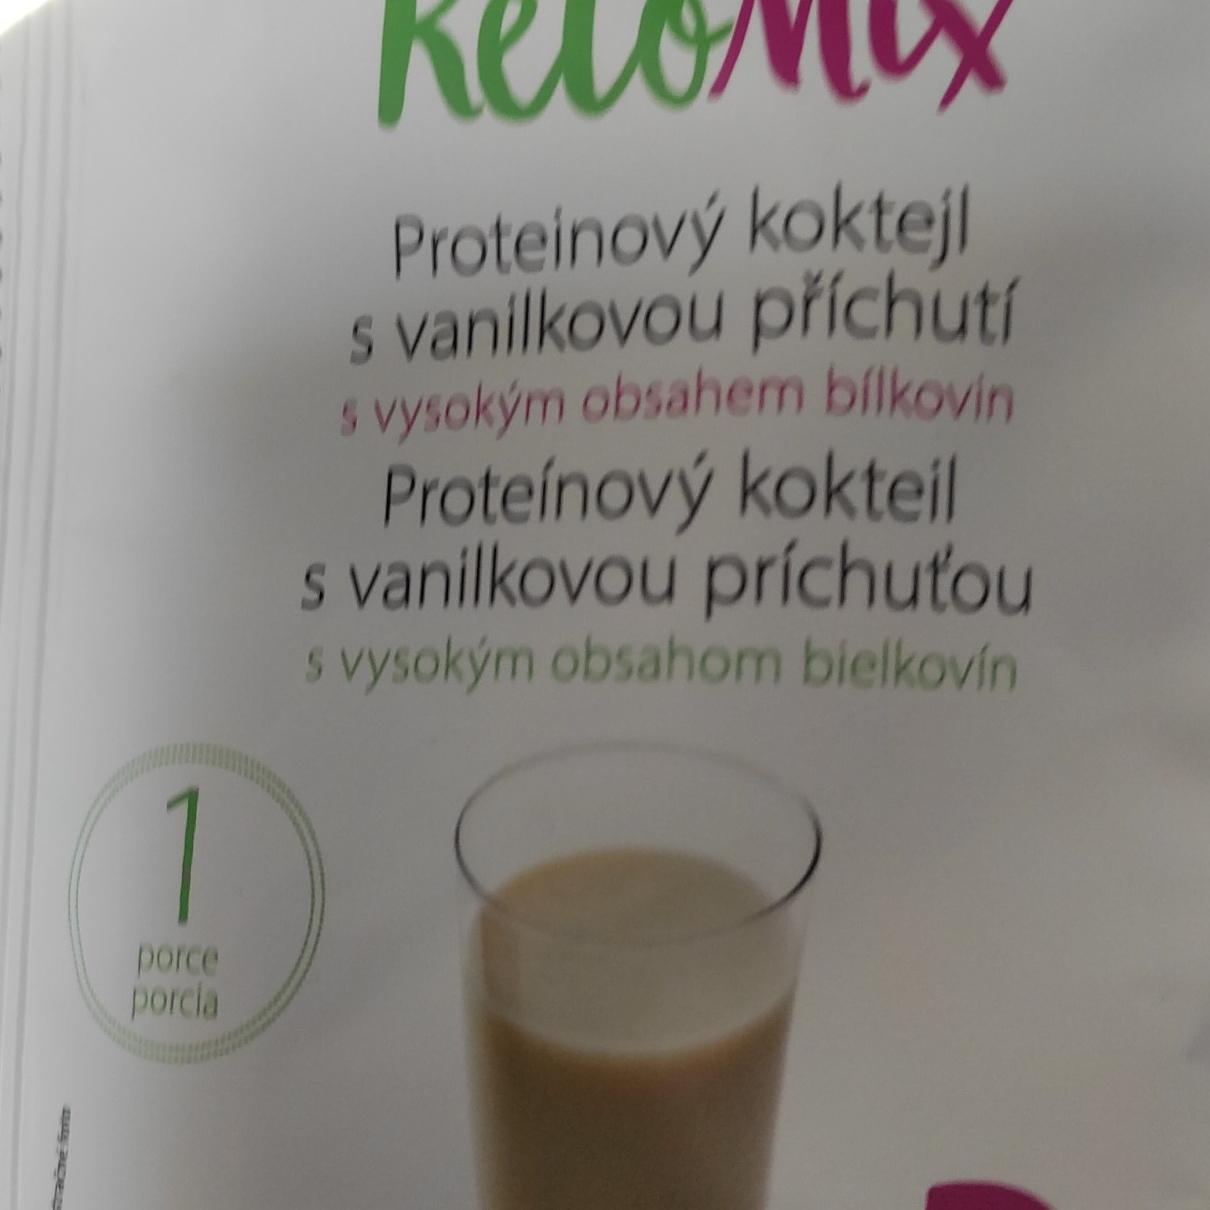 Fotografie - Proteinový koktejl s vanilkovou příchutí KetoMix